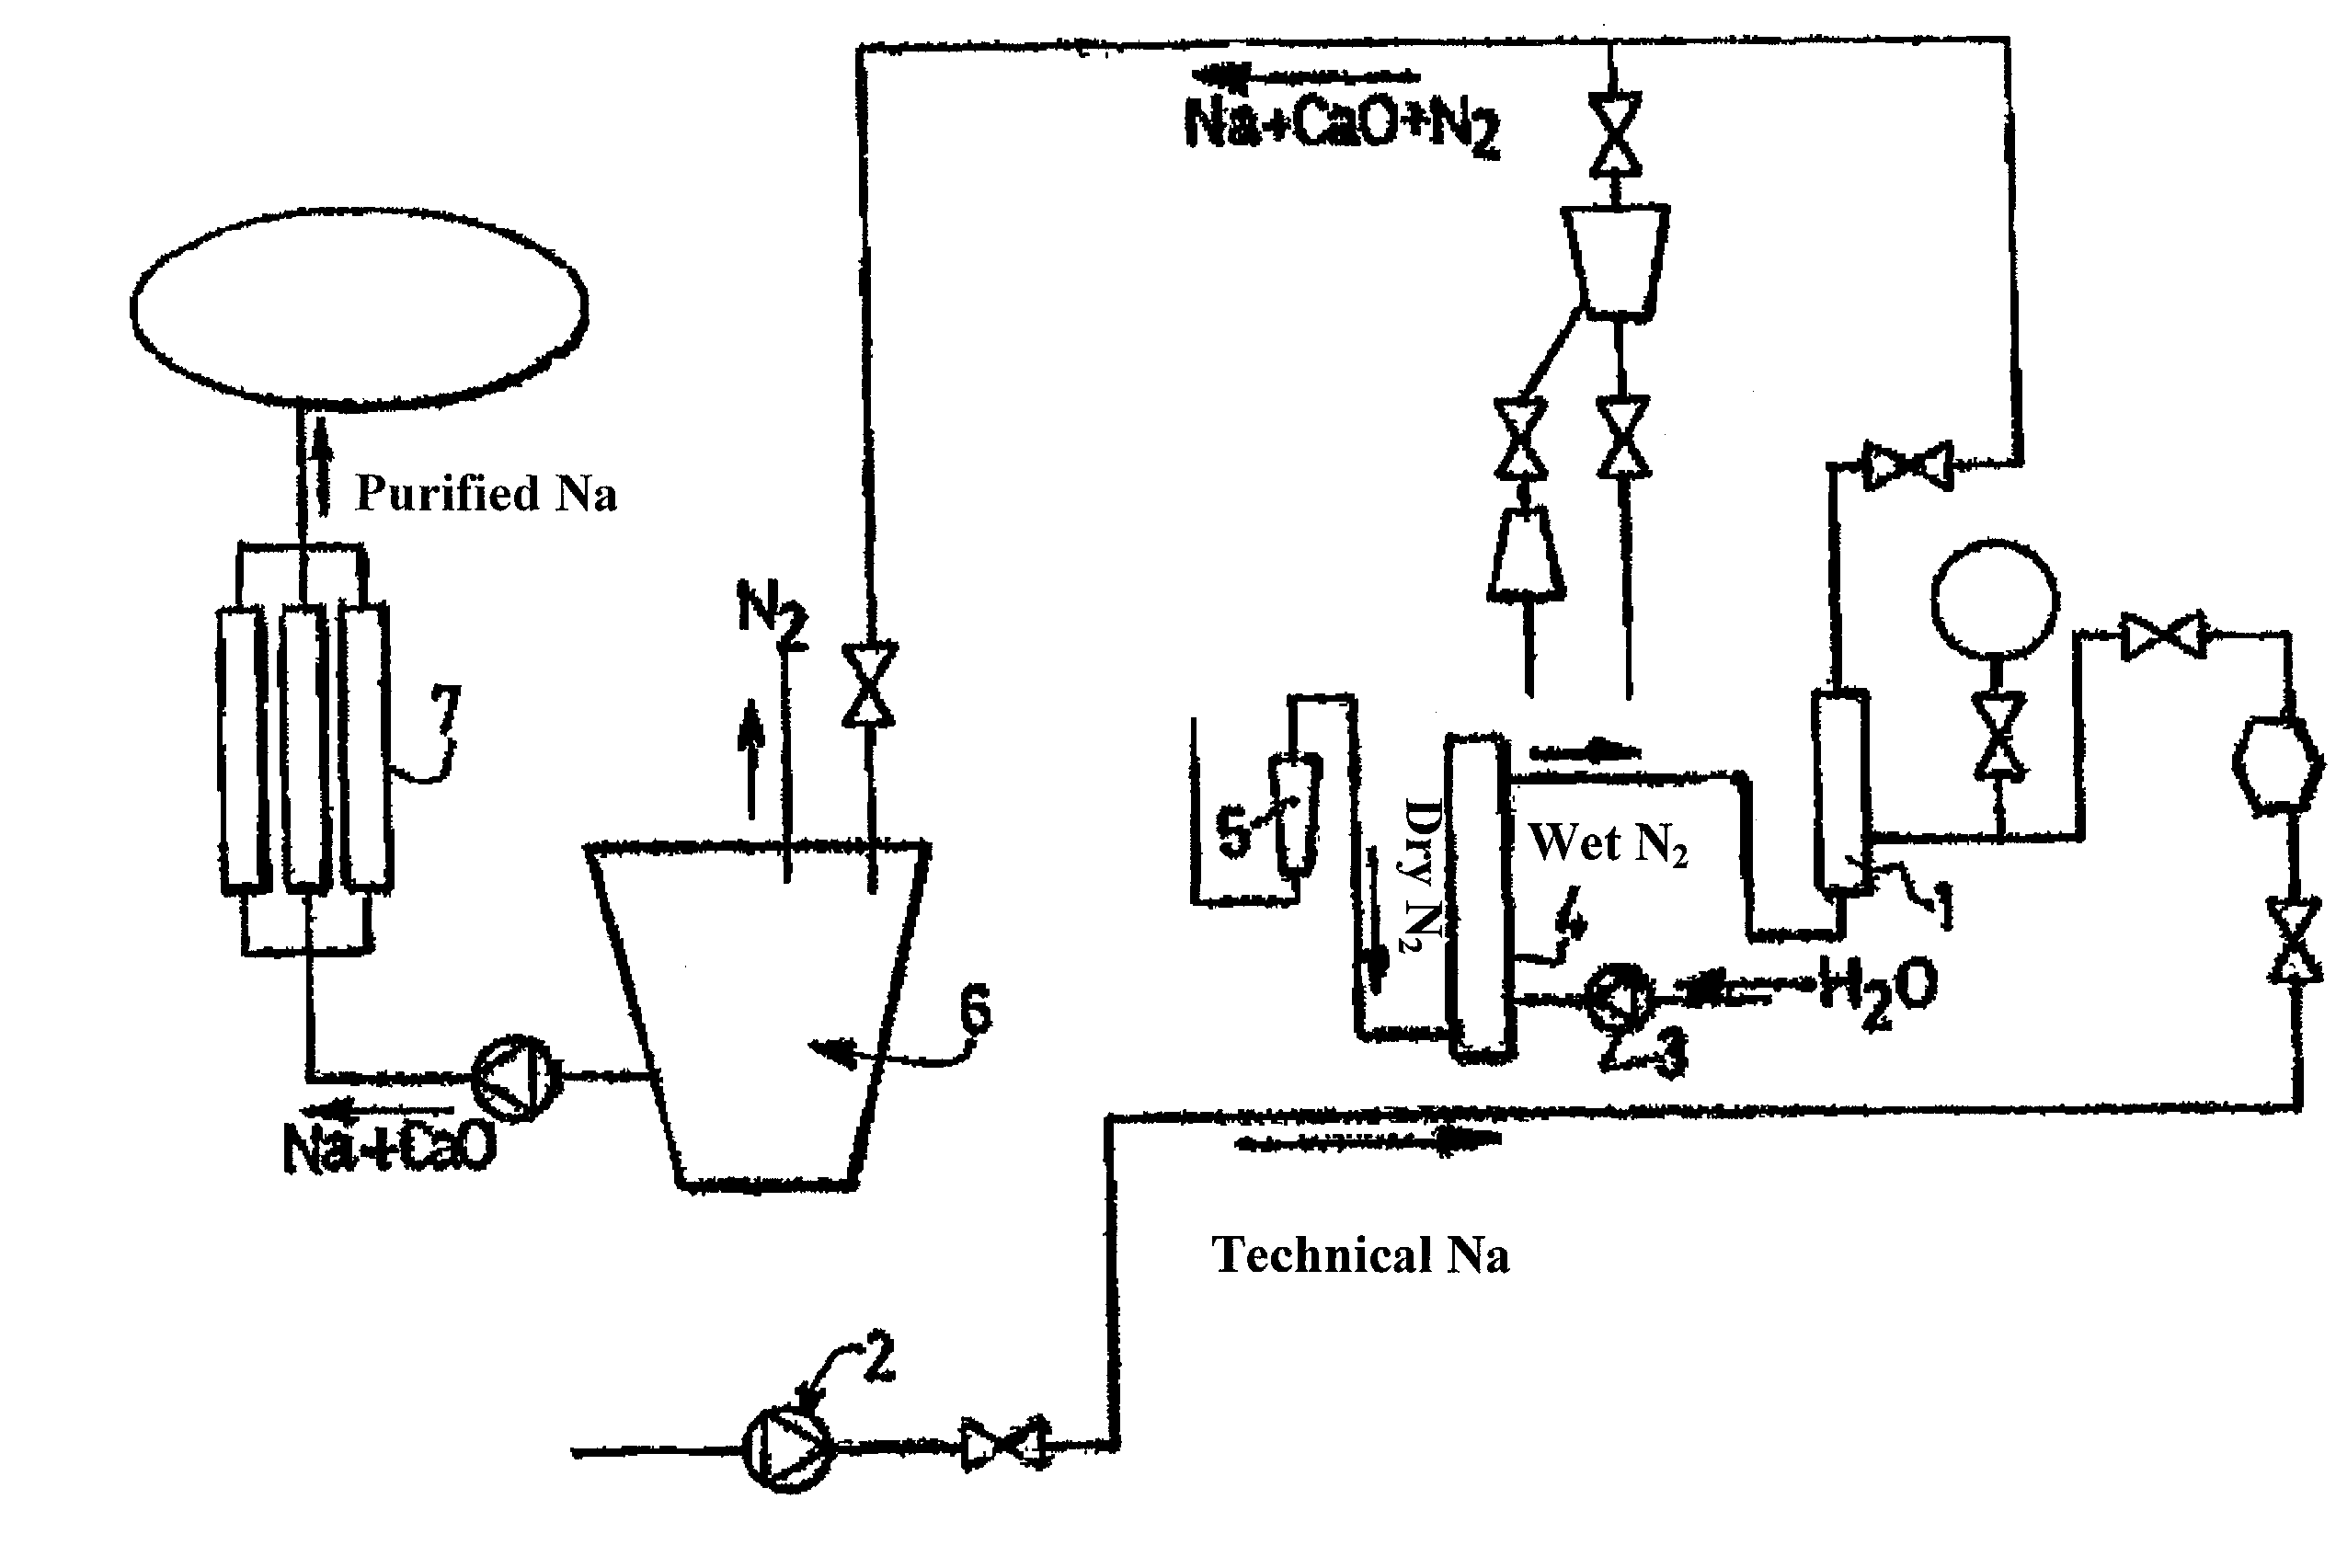 Sodium purification method